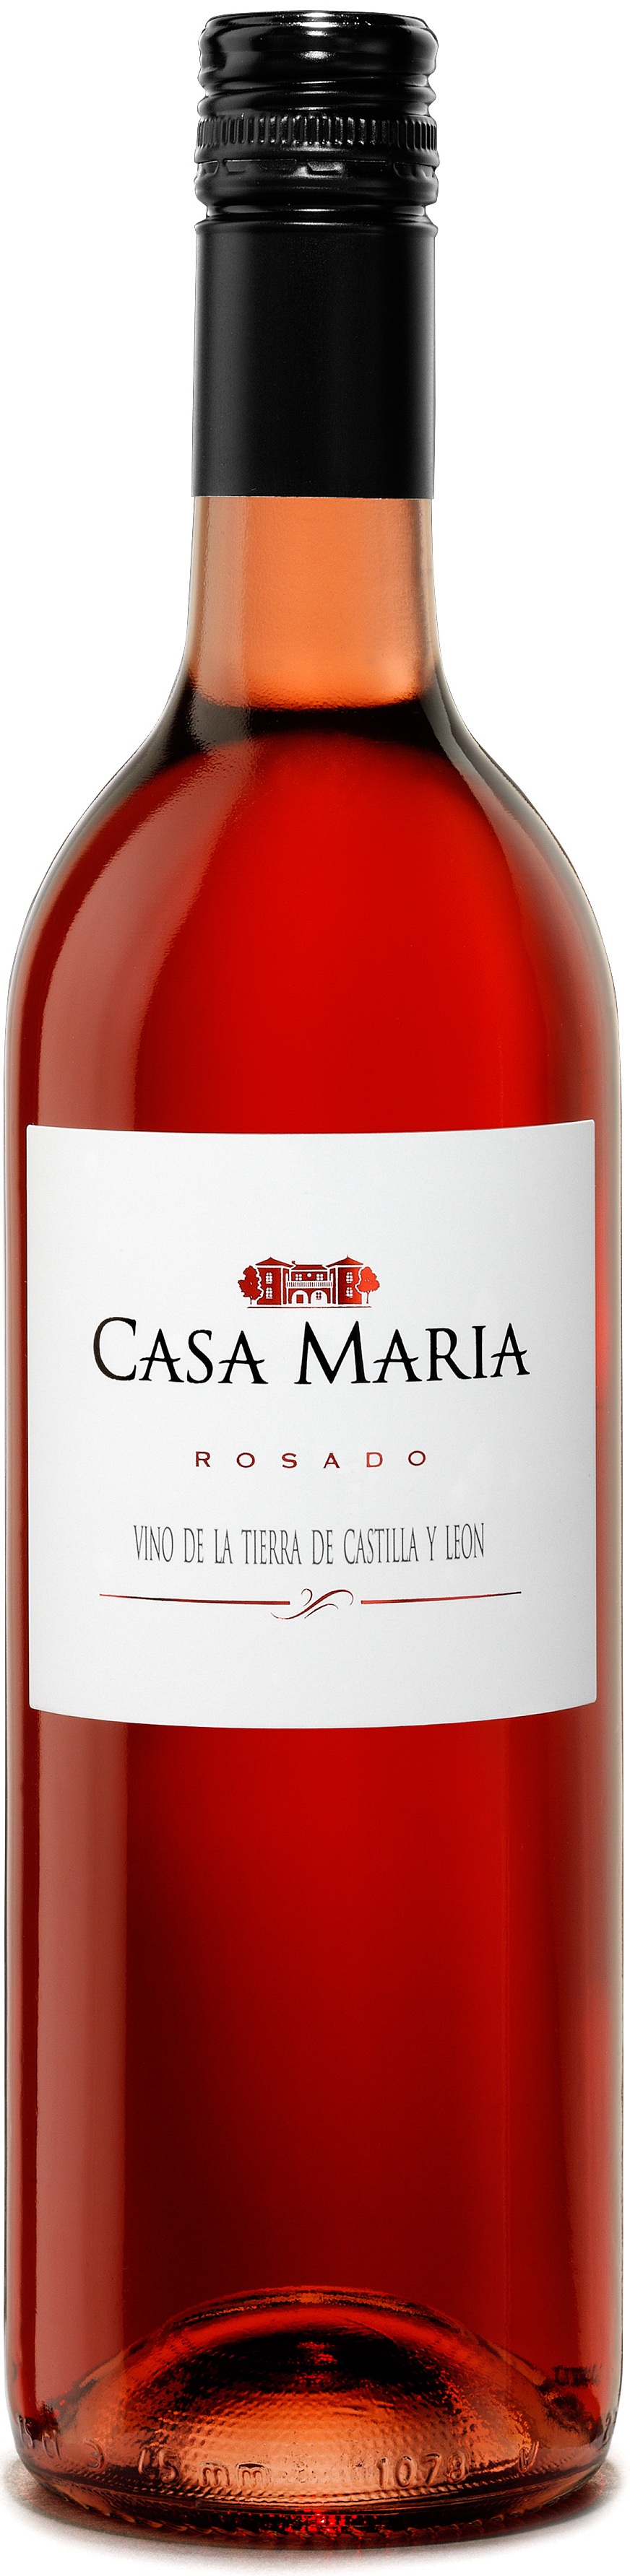 Logo del vino Casa María Rosado